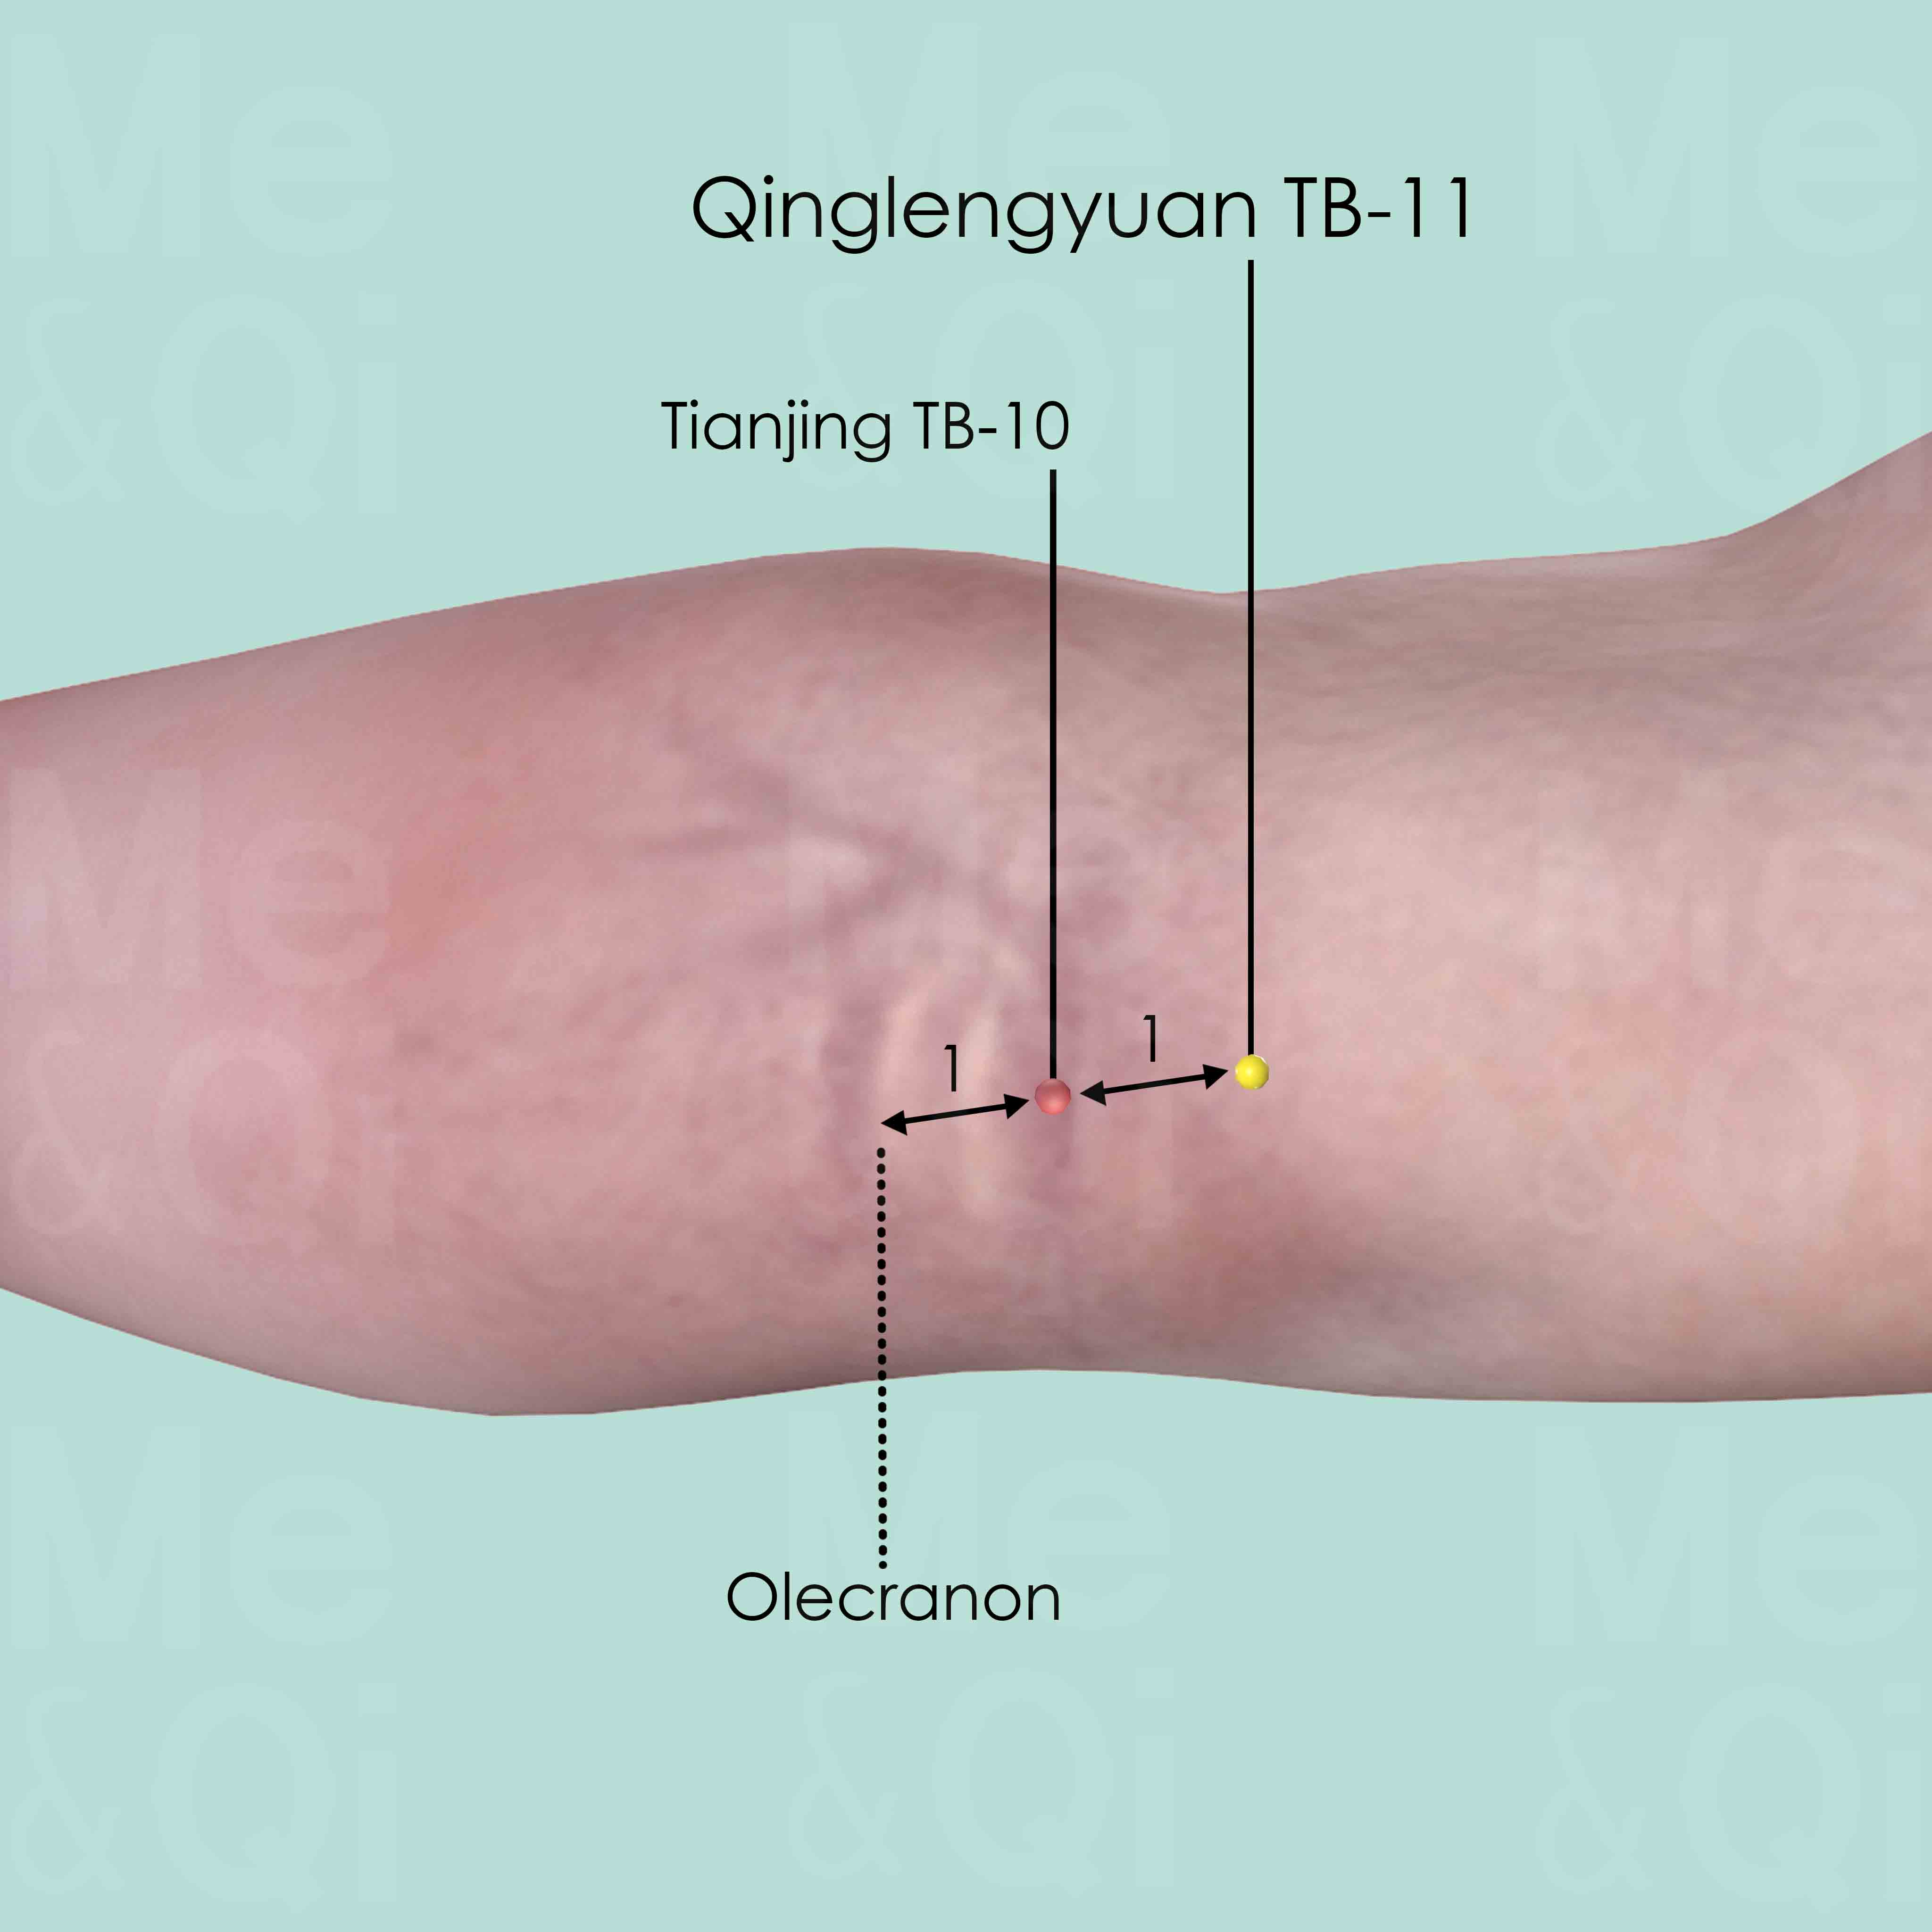 Qinglengyuan TB-11